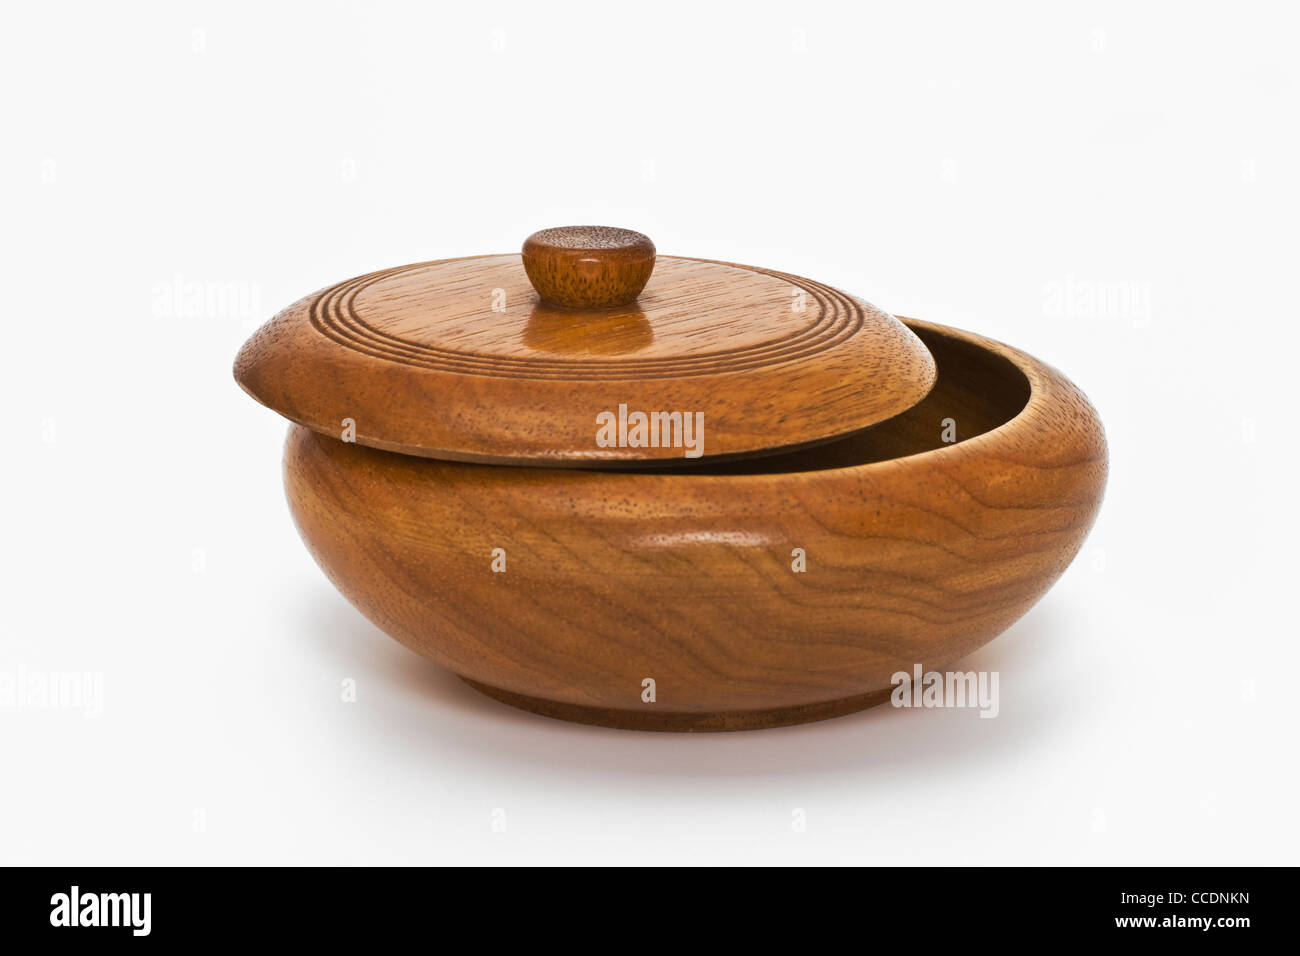 Detailansicht einer runden Dose aus Holz, der Deckel ist geöffnet | Detail photo of a round wooden box, the top is open Stock Photo